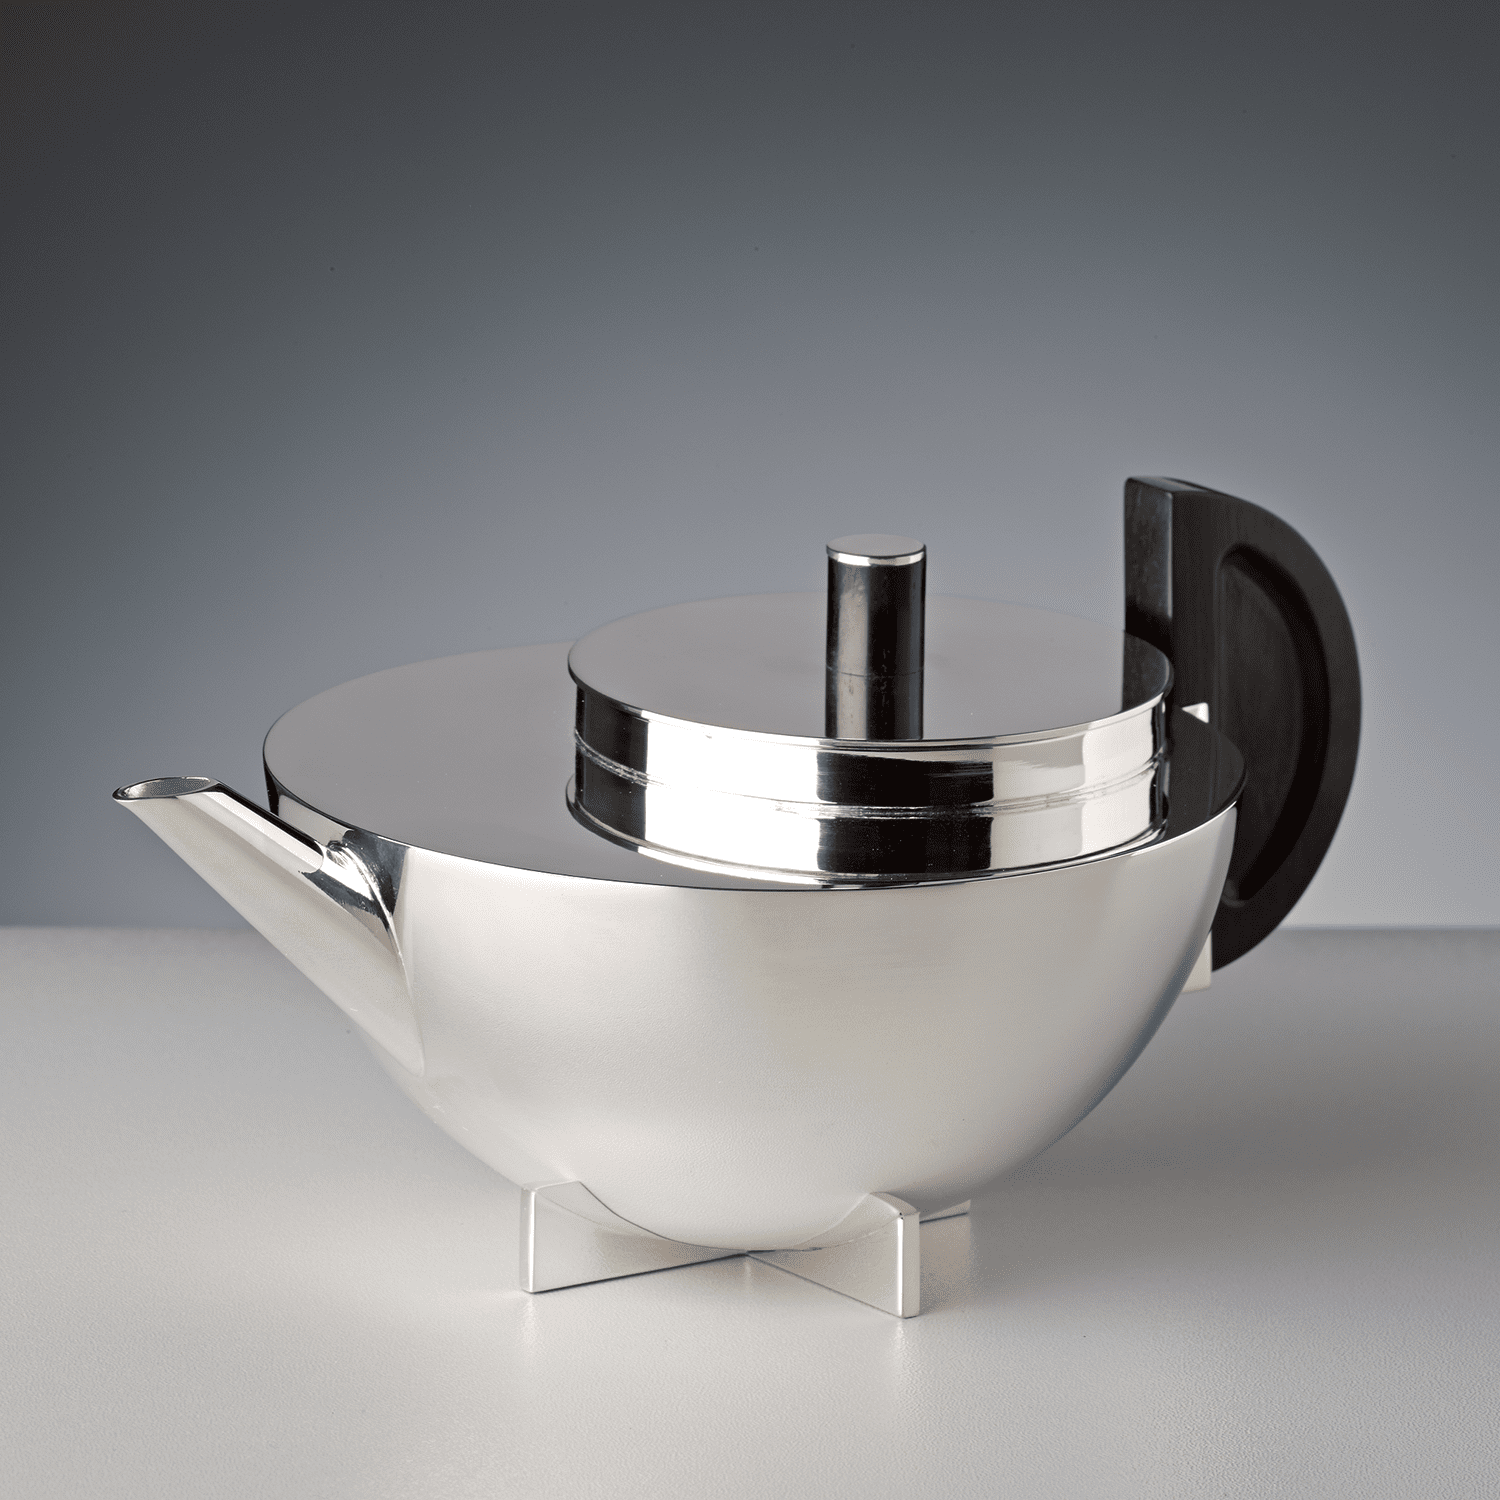 εικόνα του Bauhaus Τσάι εσάνς δοχείο Marianne Brandt